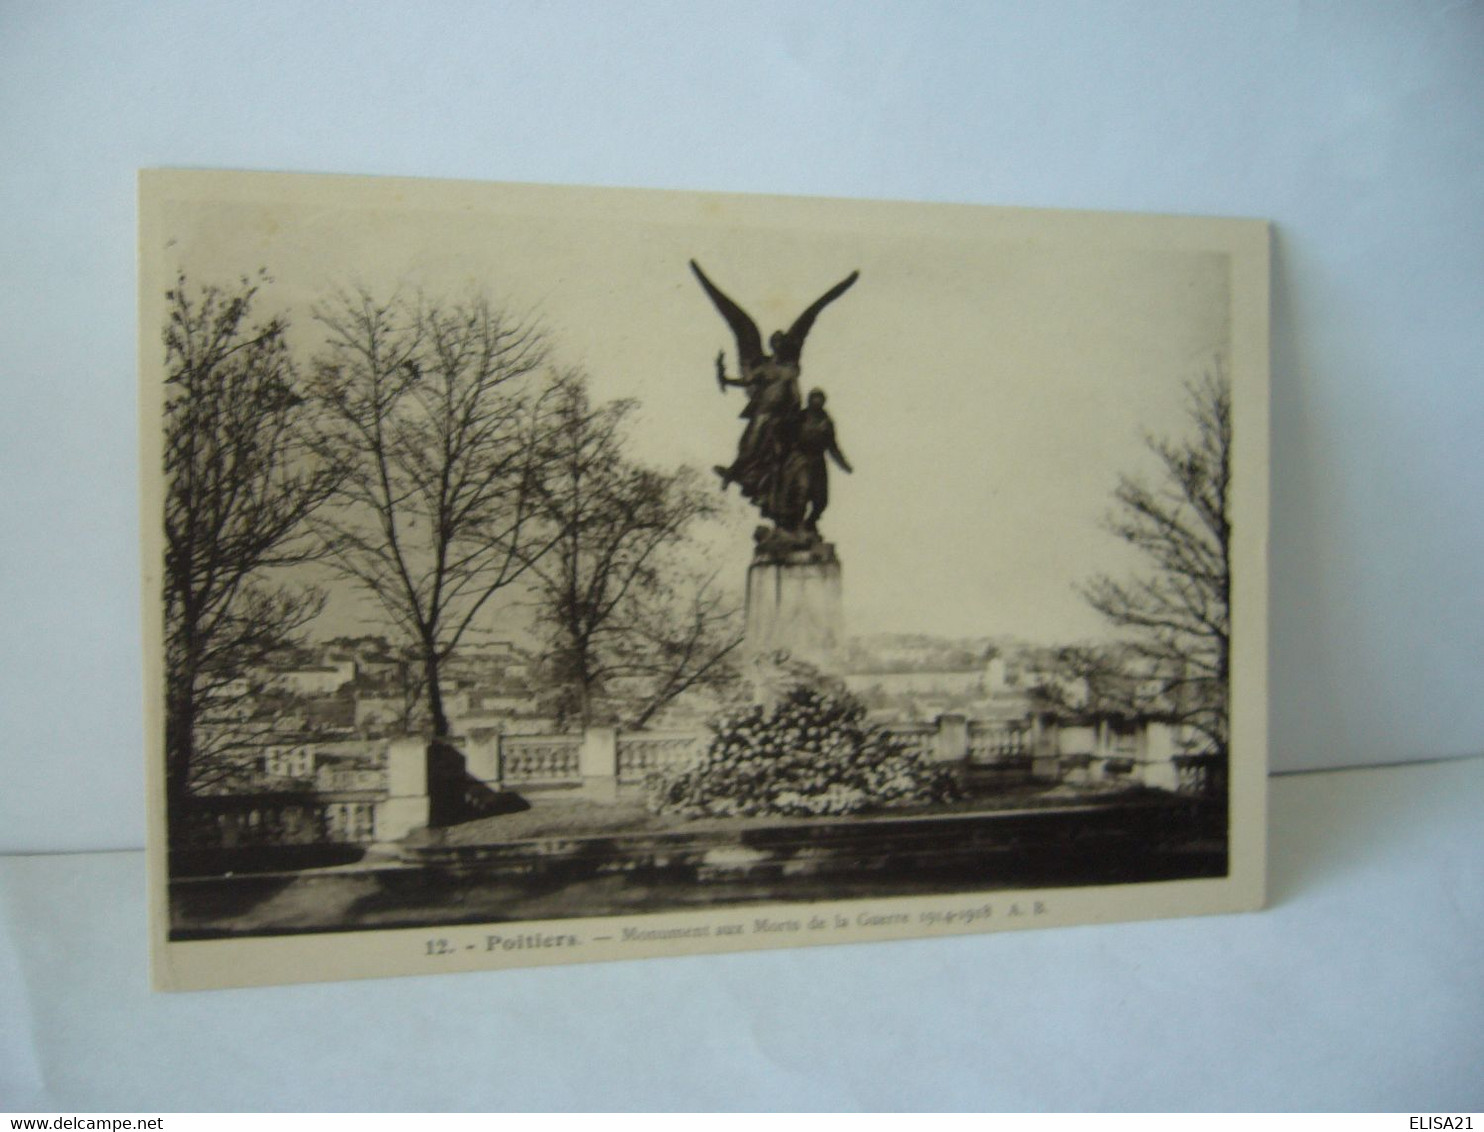 12. POITIERS  86 VIENNE MONUMENT AUX MORTS DE LA GUERRE 1914.1918 CPA PHOTOTYPIE A.BRUEL ANGERS - Monuments Aux Morts